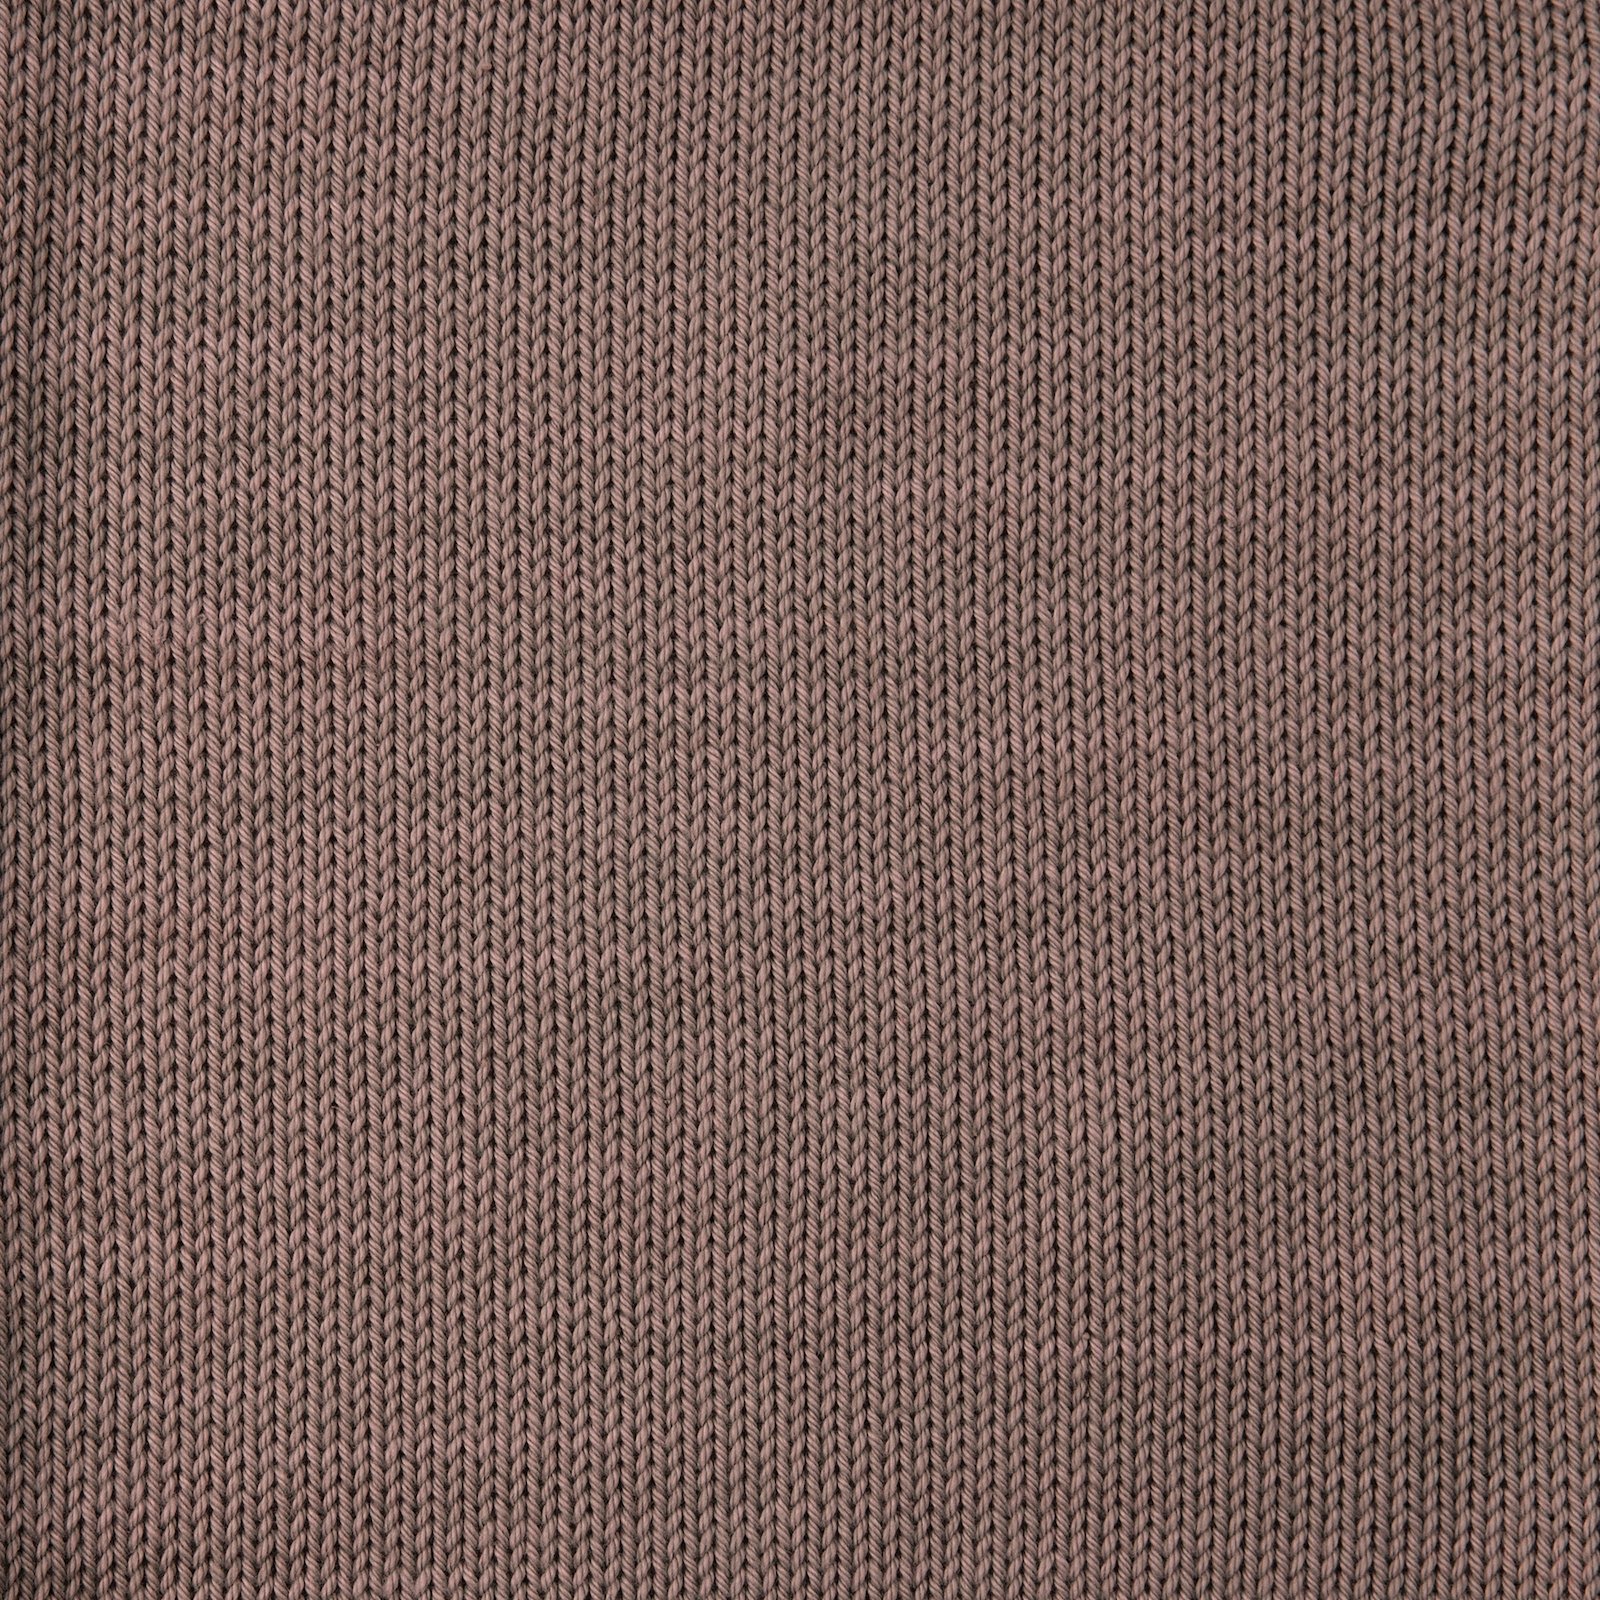 FRAYA, 100% cotton yarn "Colourful", mocca 90060031_sskit